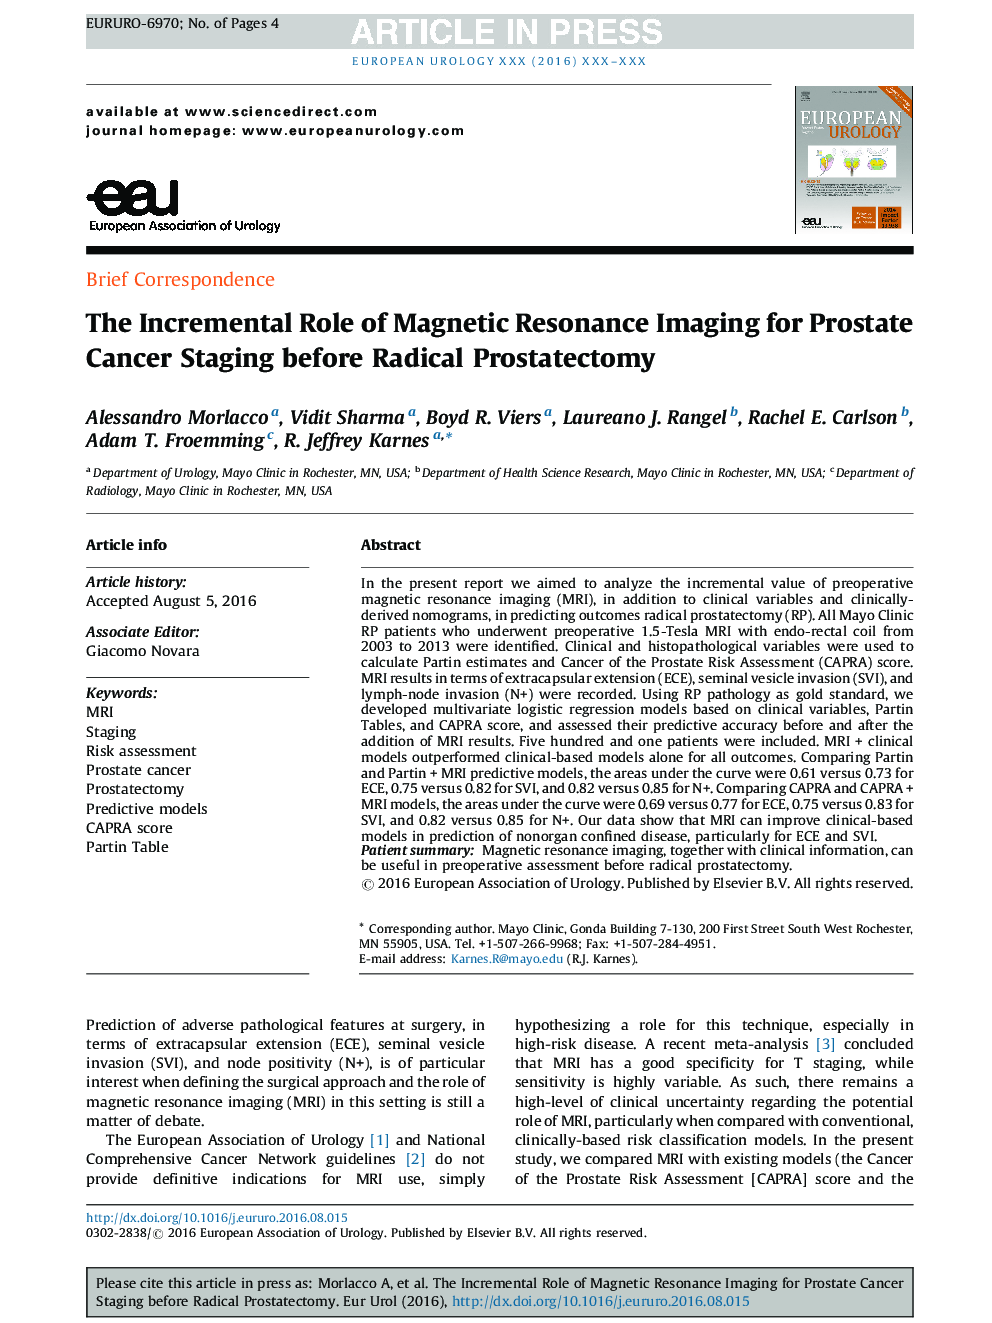 نقش افزایشی تصویربرداری رزونانس مغناطیسی برای پیشگیری از سرطان پروستات قبل از پروستاتکتومی رادیکال 